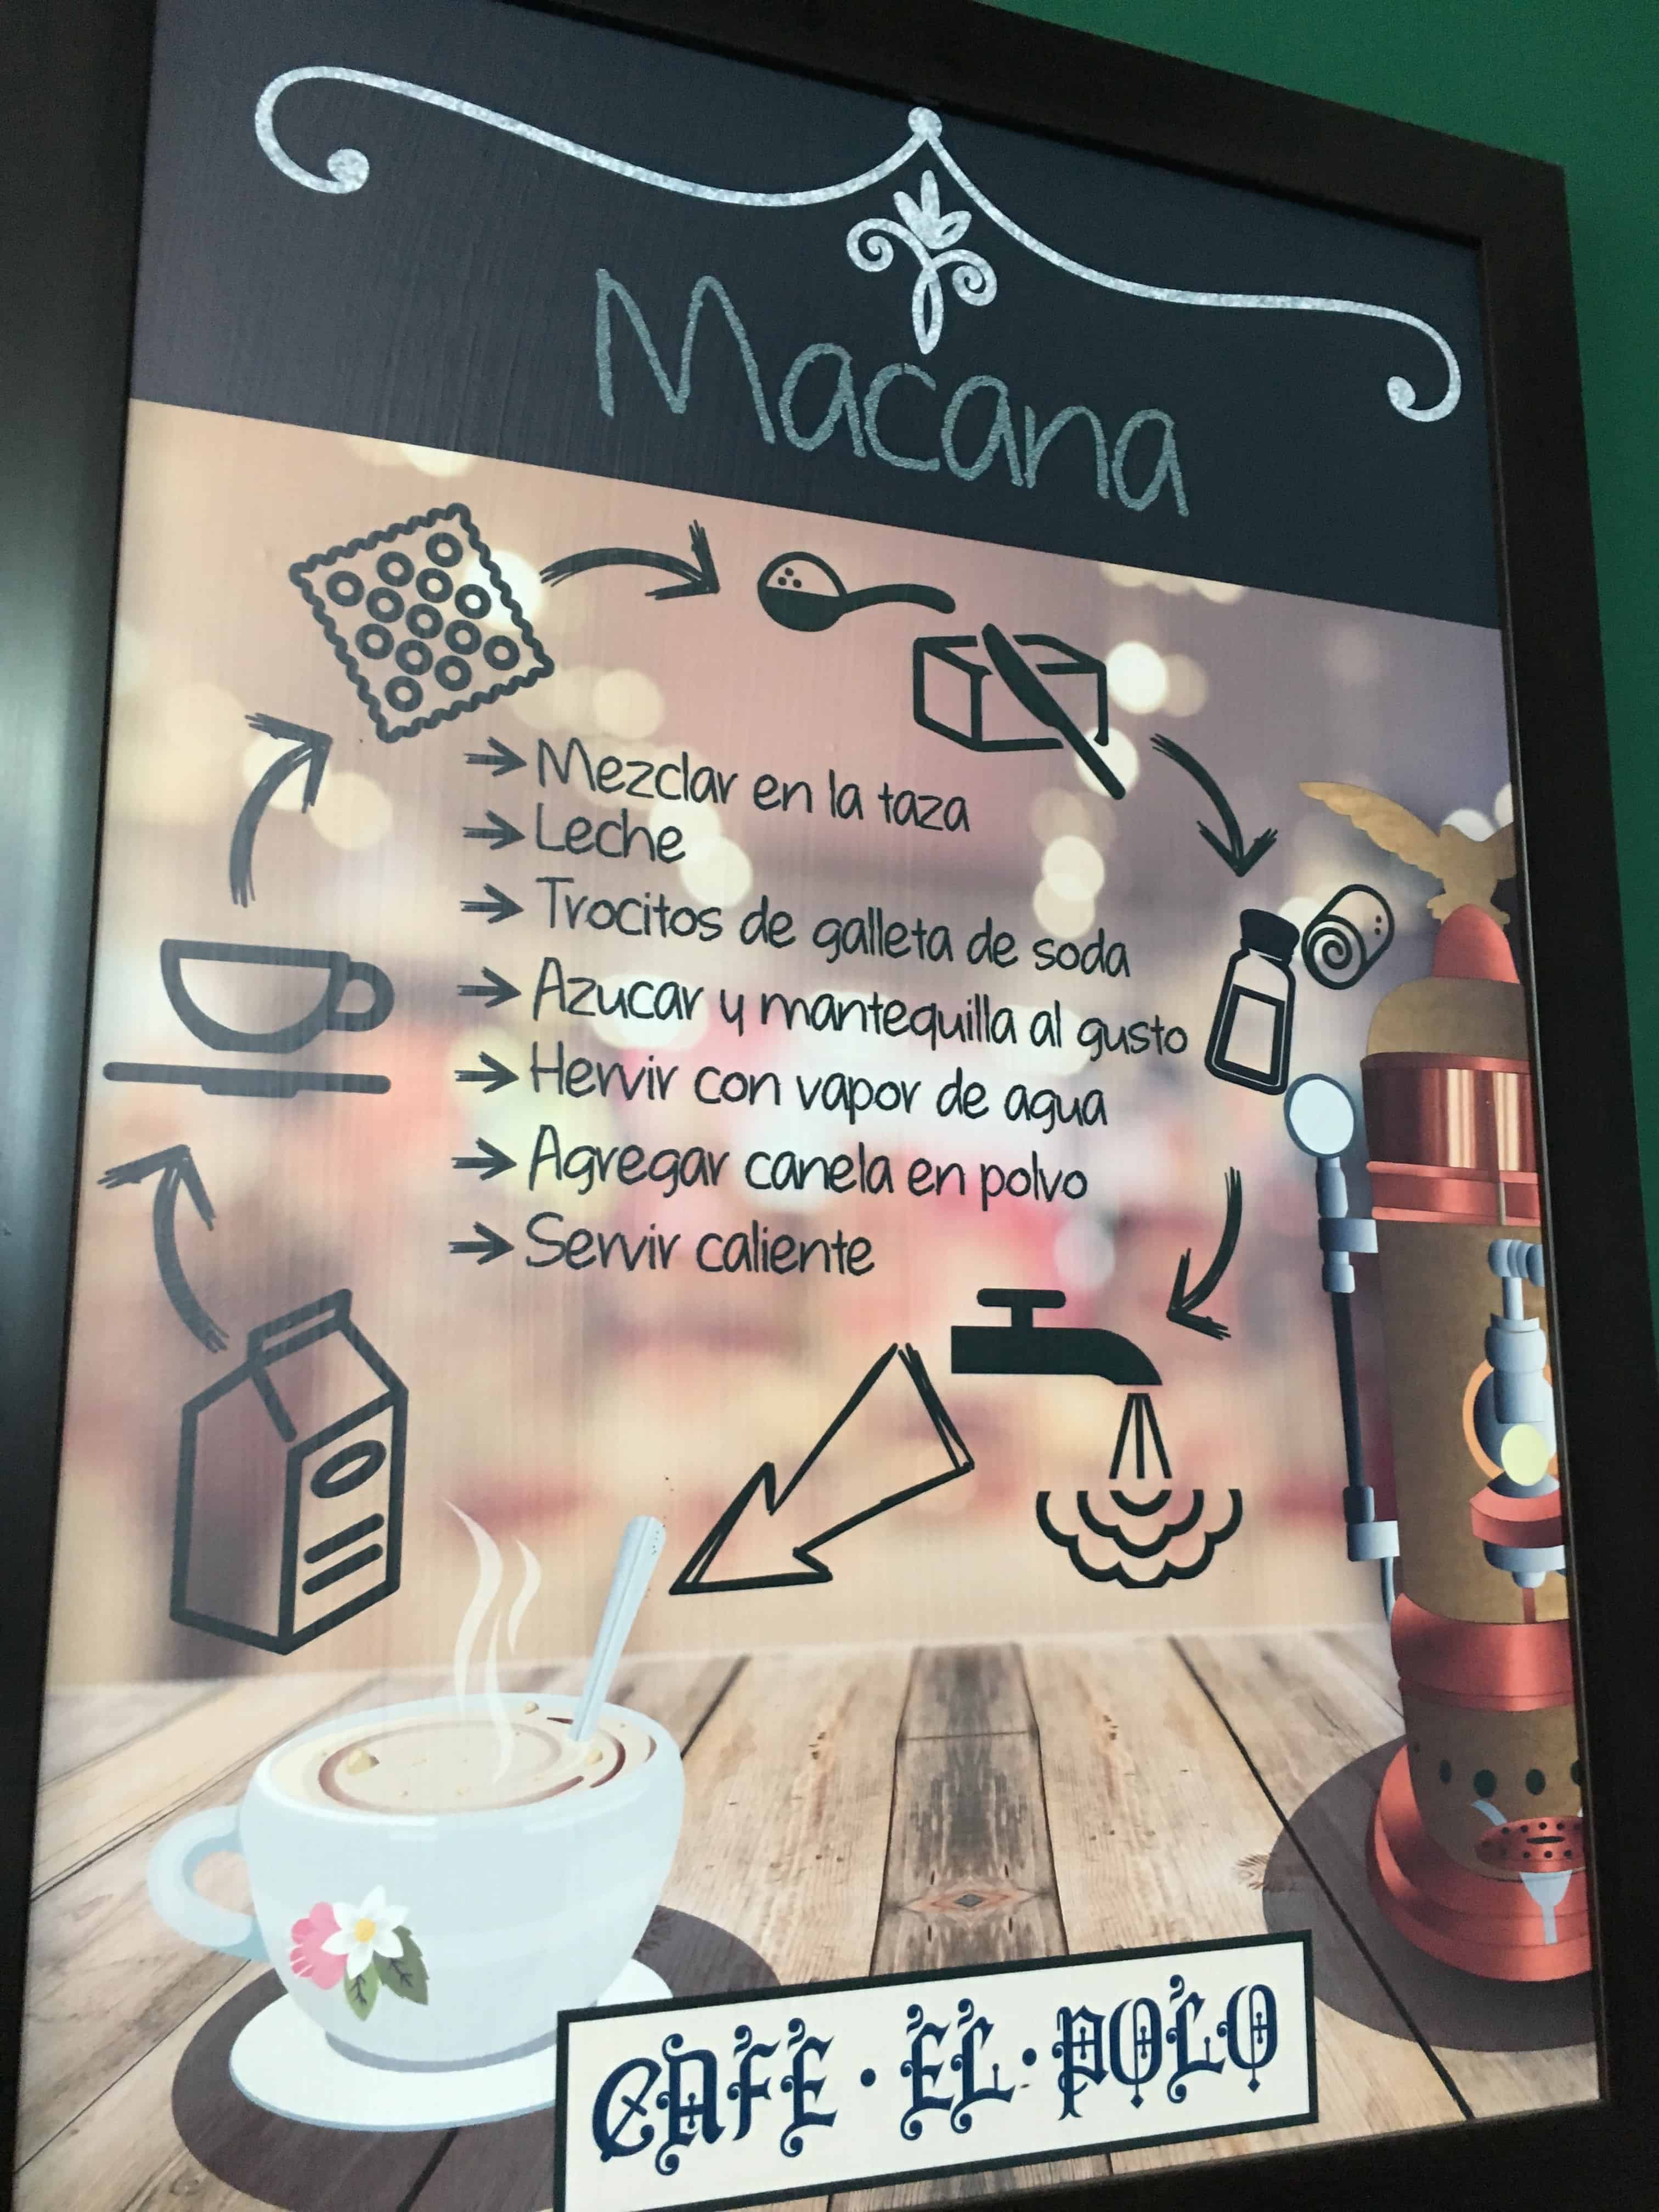 Recipe for la macana at El Polo in Salamina, Caldas, Colombia